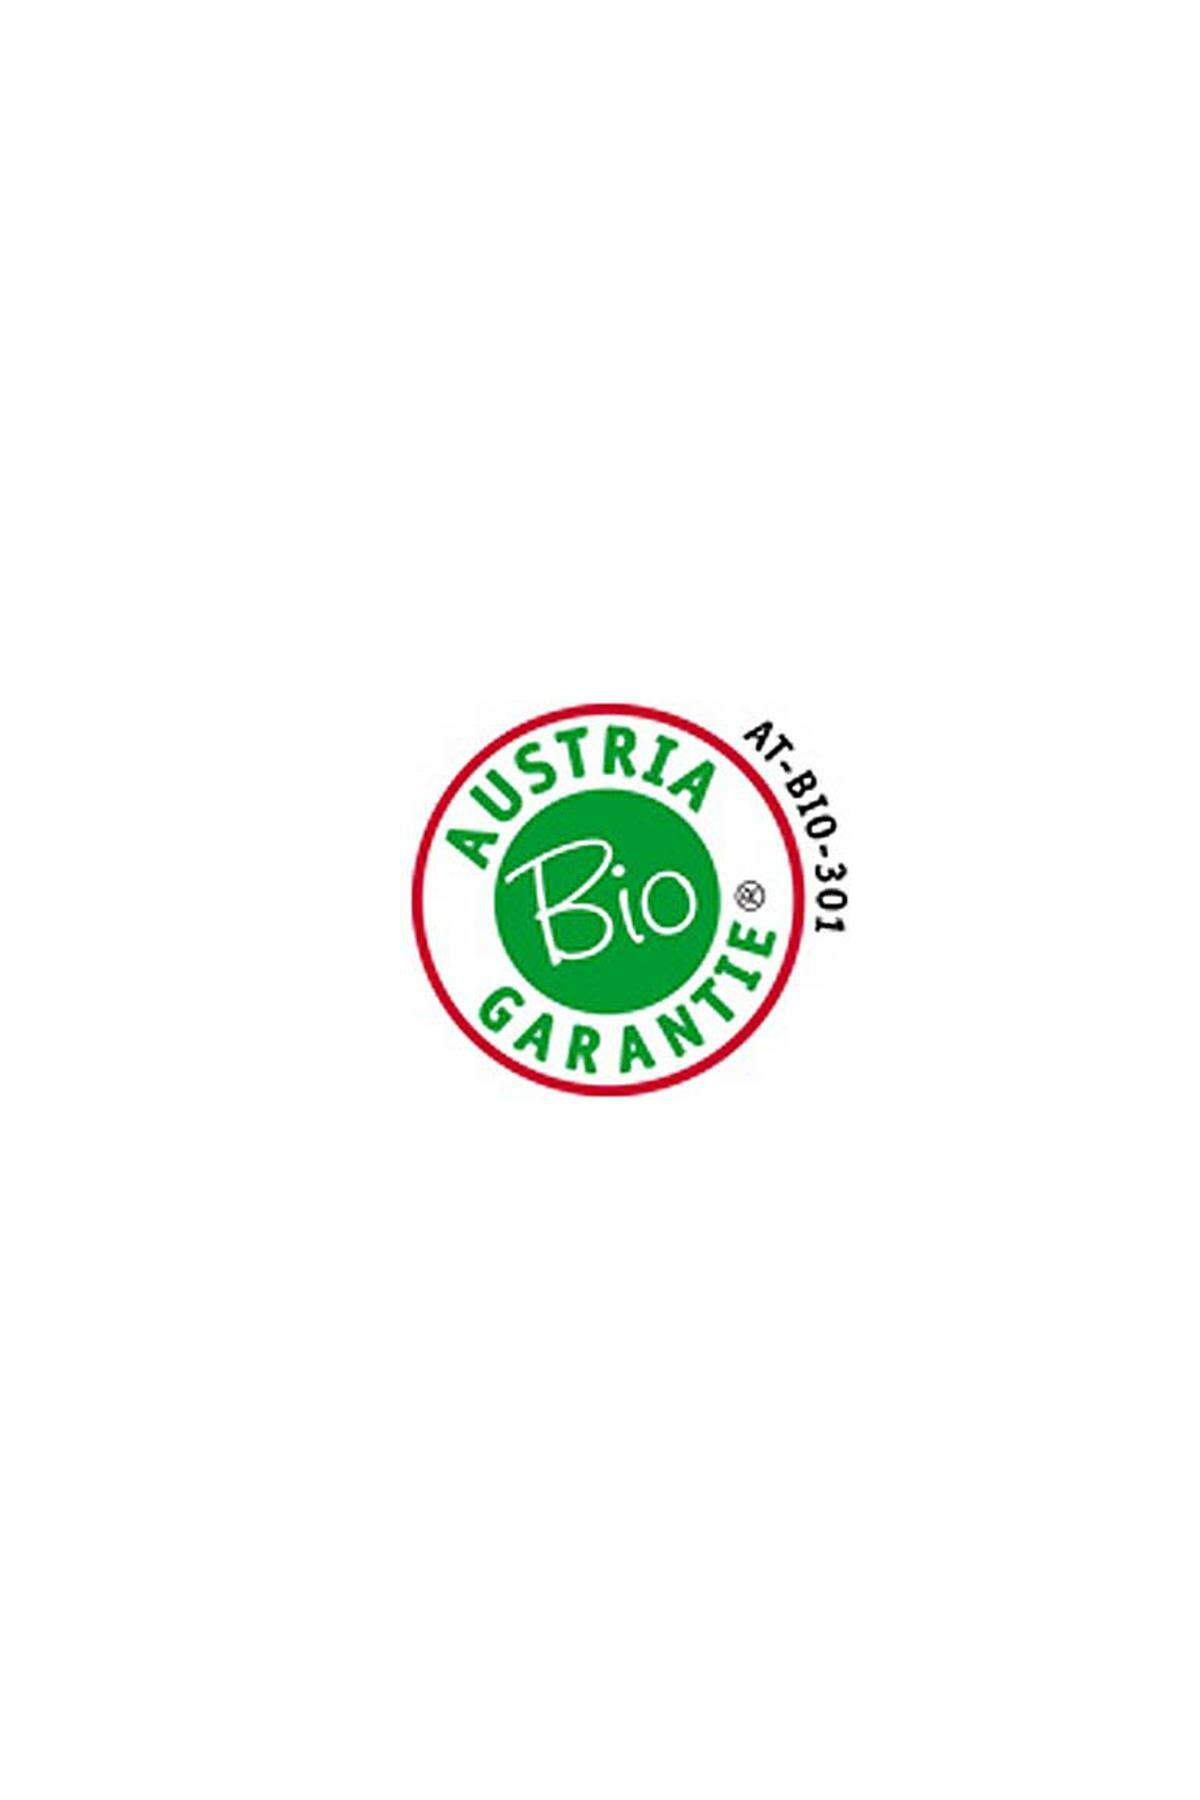 Die Austria Bio Garantie ist eine zugelassene Kontrollstelle für biologisch hergestellte Lebensmittel. Von der Austria Bio Garantie geprüfte Bioprodukte tragen den Kontrollstellencode: AT-Bio-301 (früher: AT-N-01-Bio). Produkte mit dieser Kennzeichnung halten die gesetzlichen Anforderungen gemäß den EU-Bio-Verordnungen.